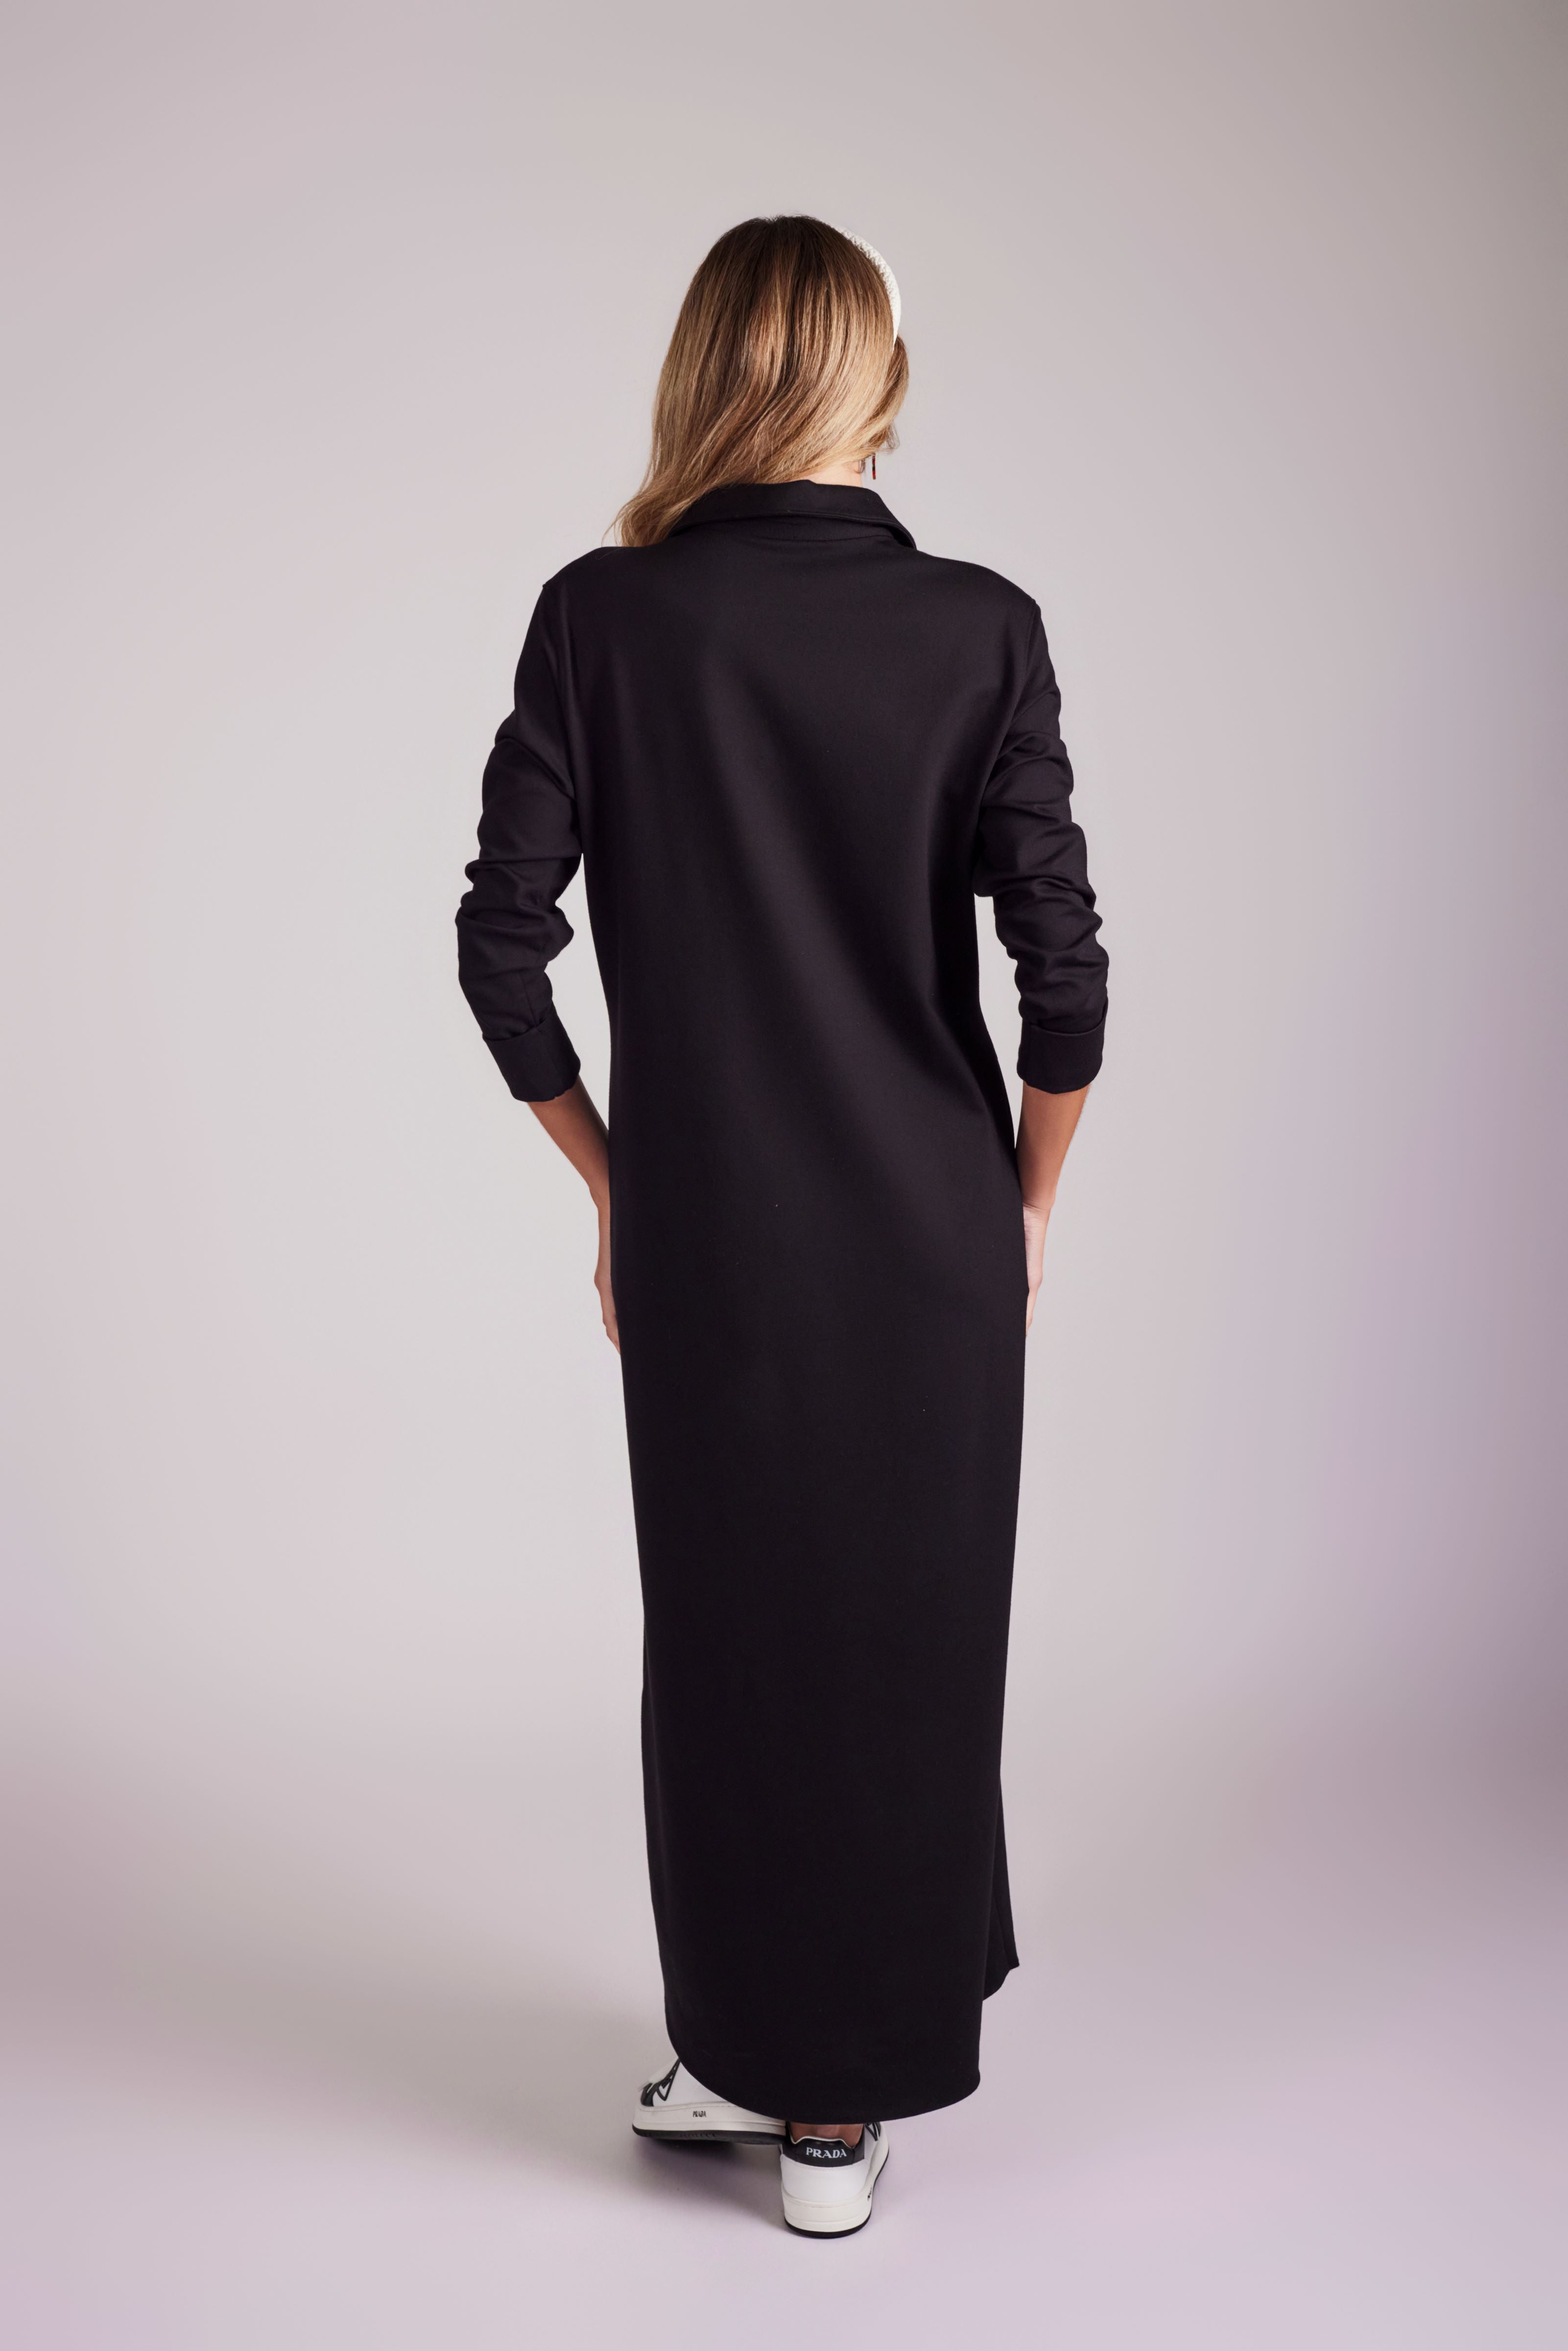 Valerie V-Neck Collar Dress - Washed Black - Olivvi World